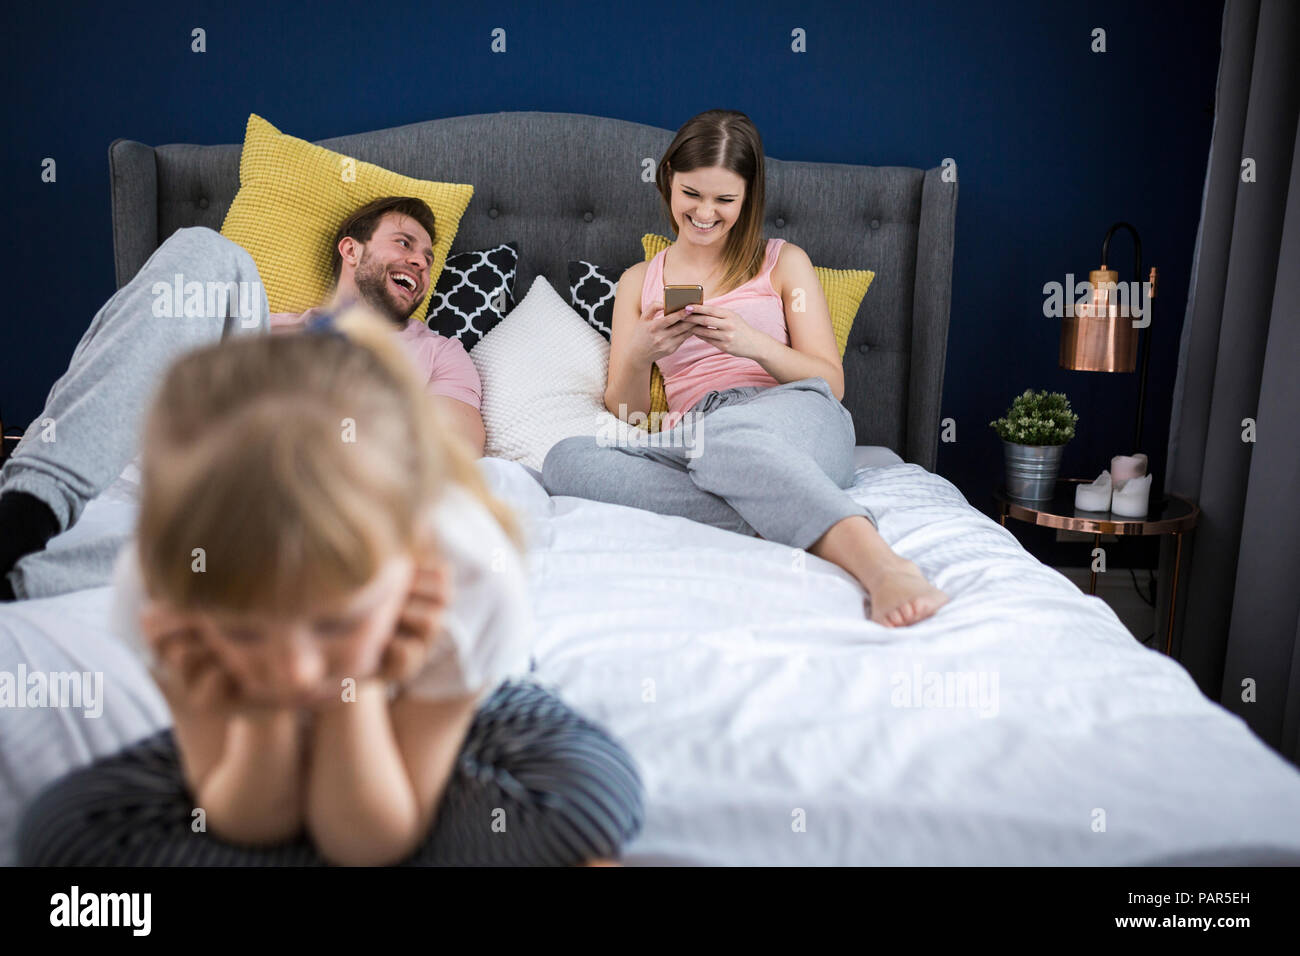 Négligé petite fille assise sur le lit avec ses parents, using smartphones Banque D'Images